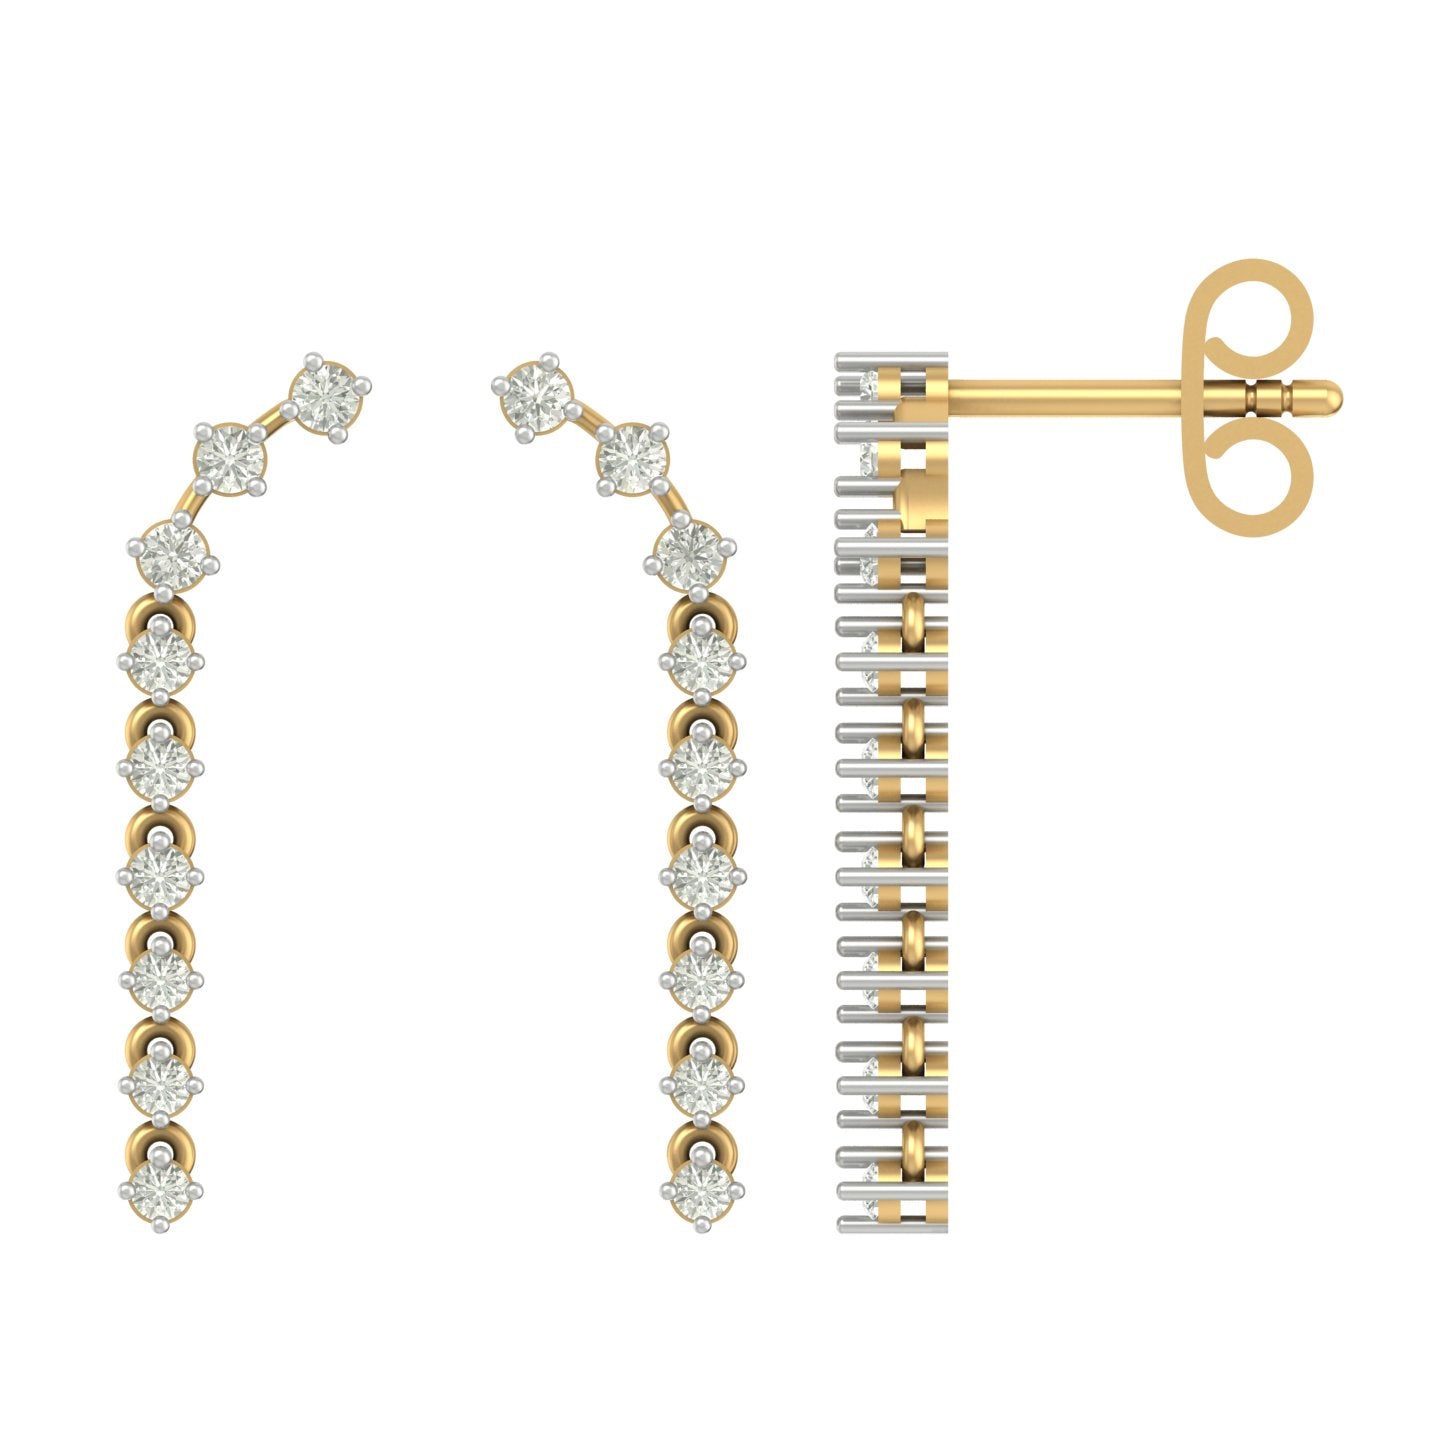 Vistia unique lab diamond earrings design